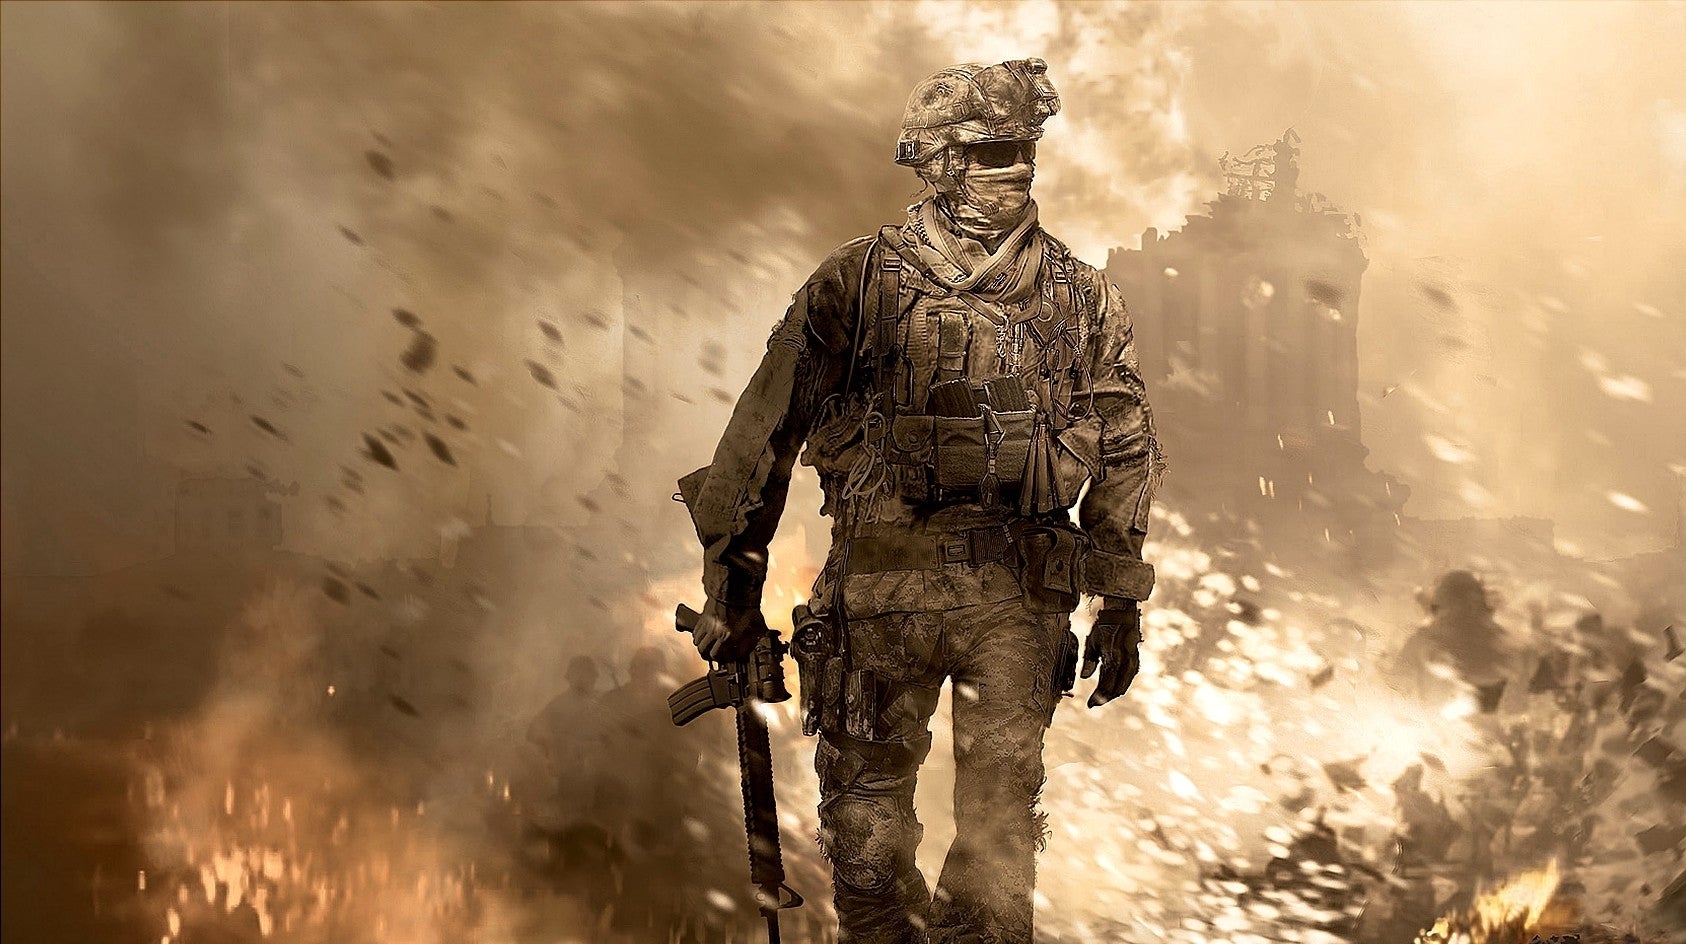 Obrazki dla Call of Duty: Modern Warfare 2 Remastered w bazie europejskiego PEGI